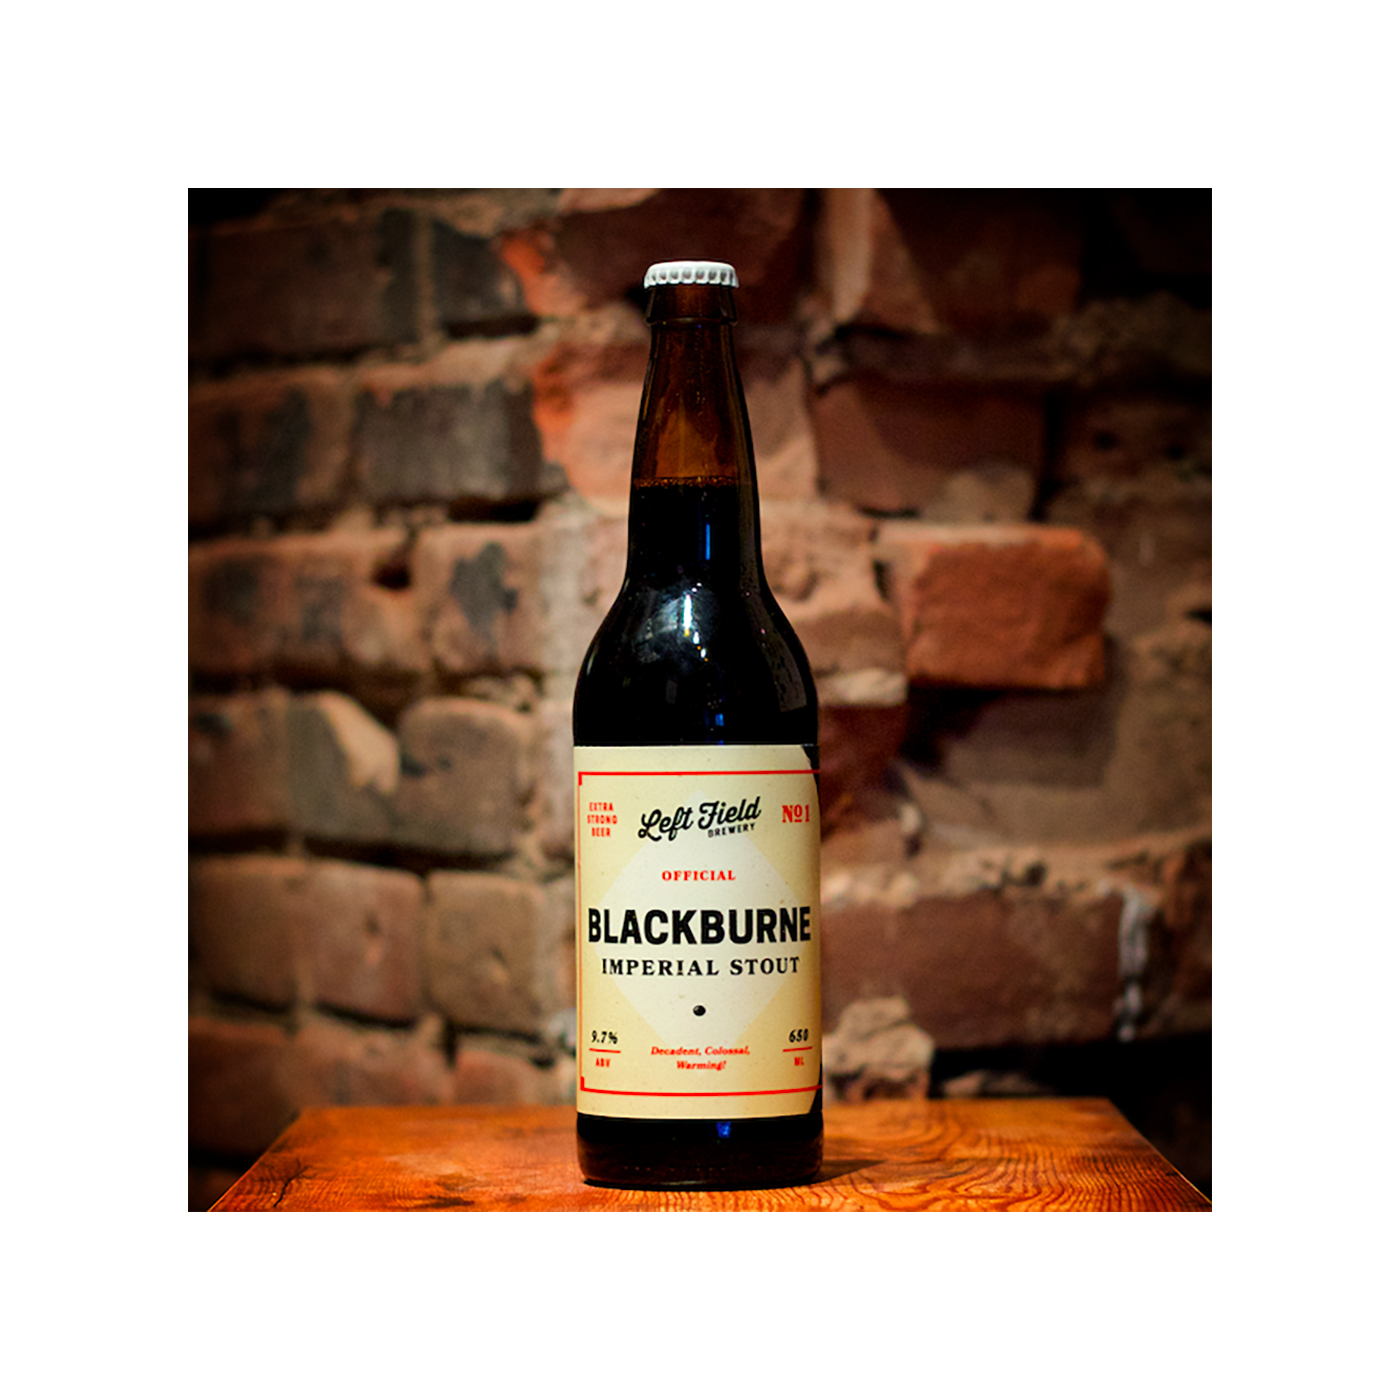 Blackburne beer bottle design.